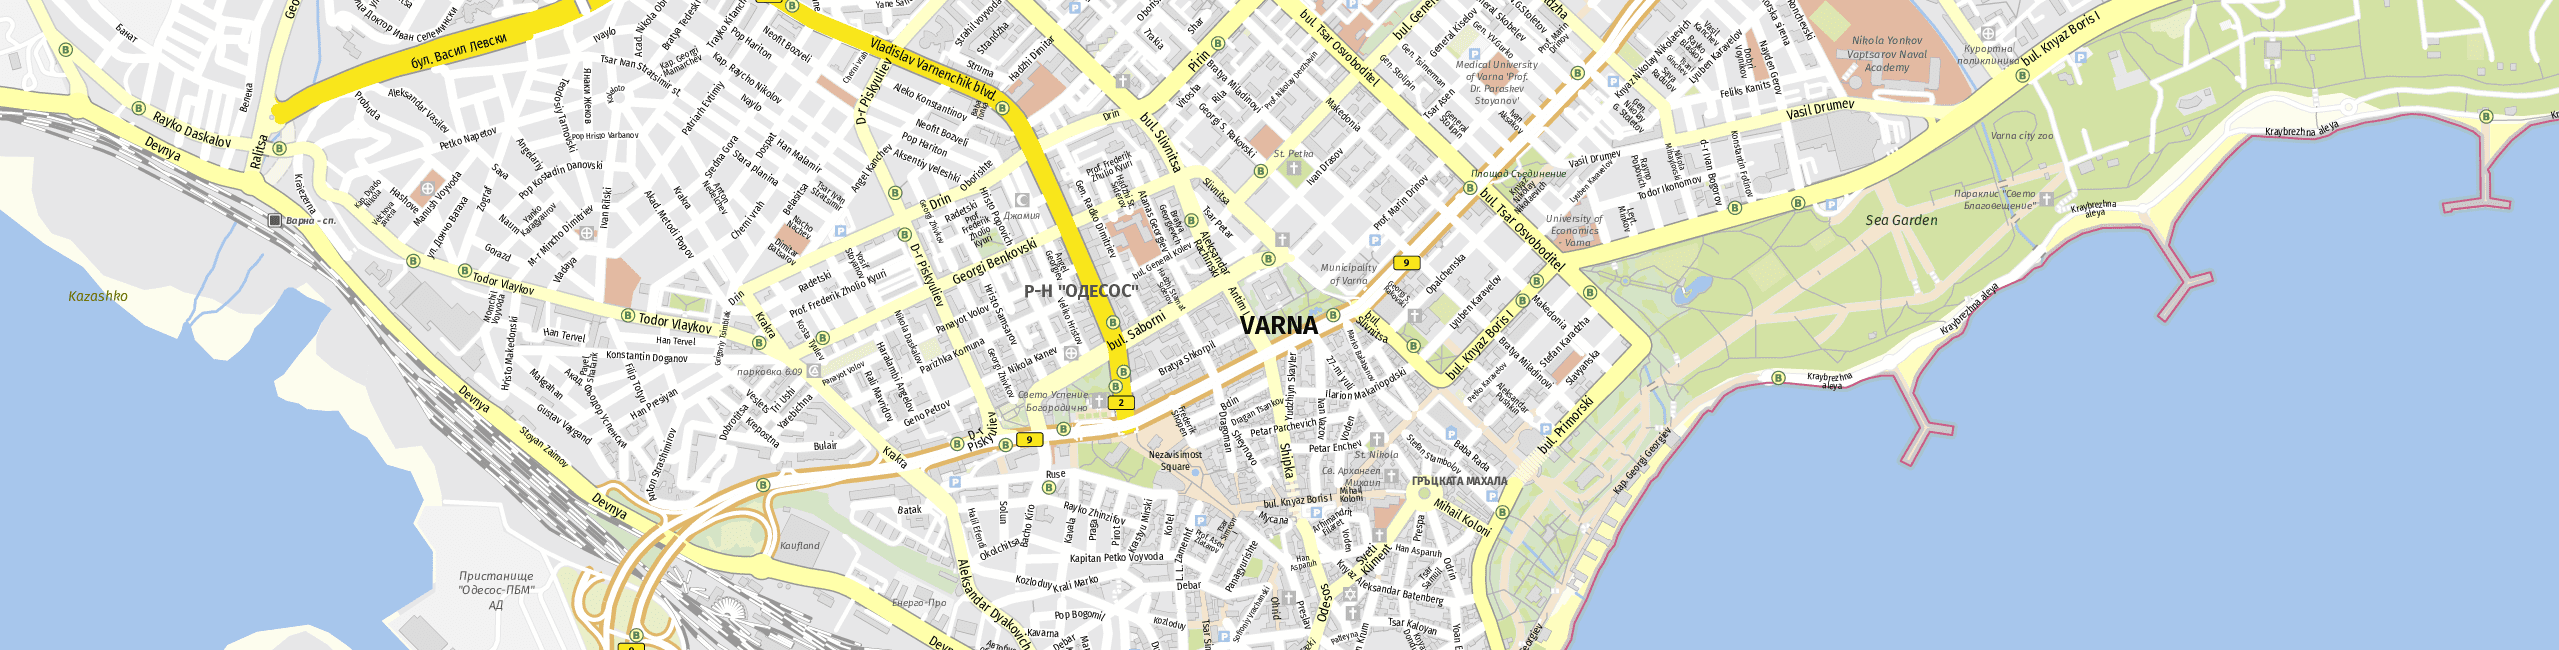 Stadtplan Varna zum Downloaden.